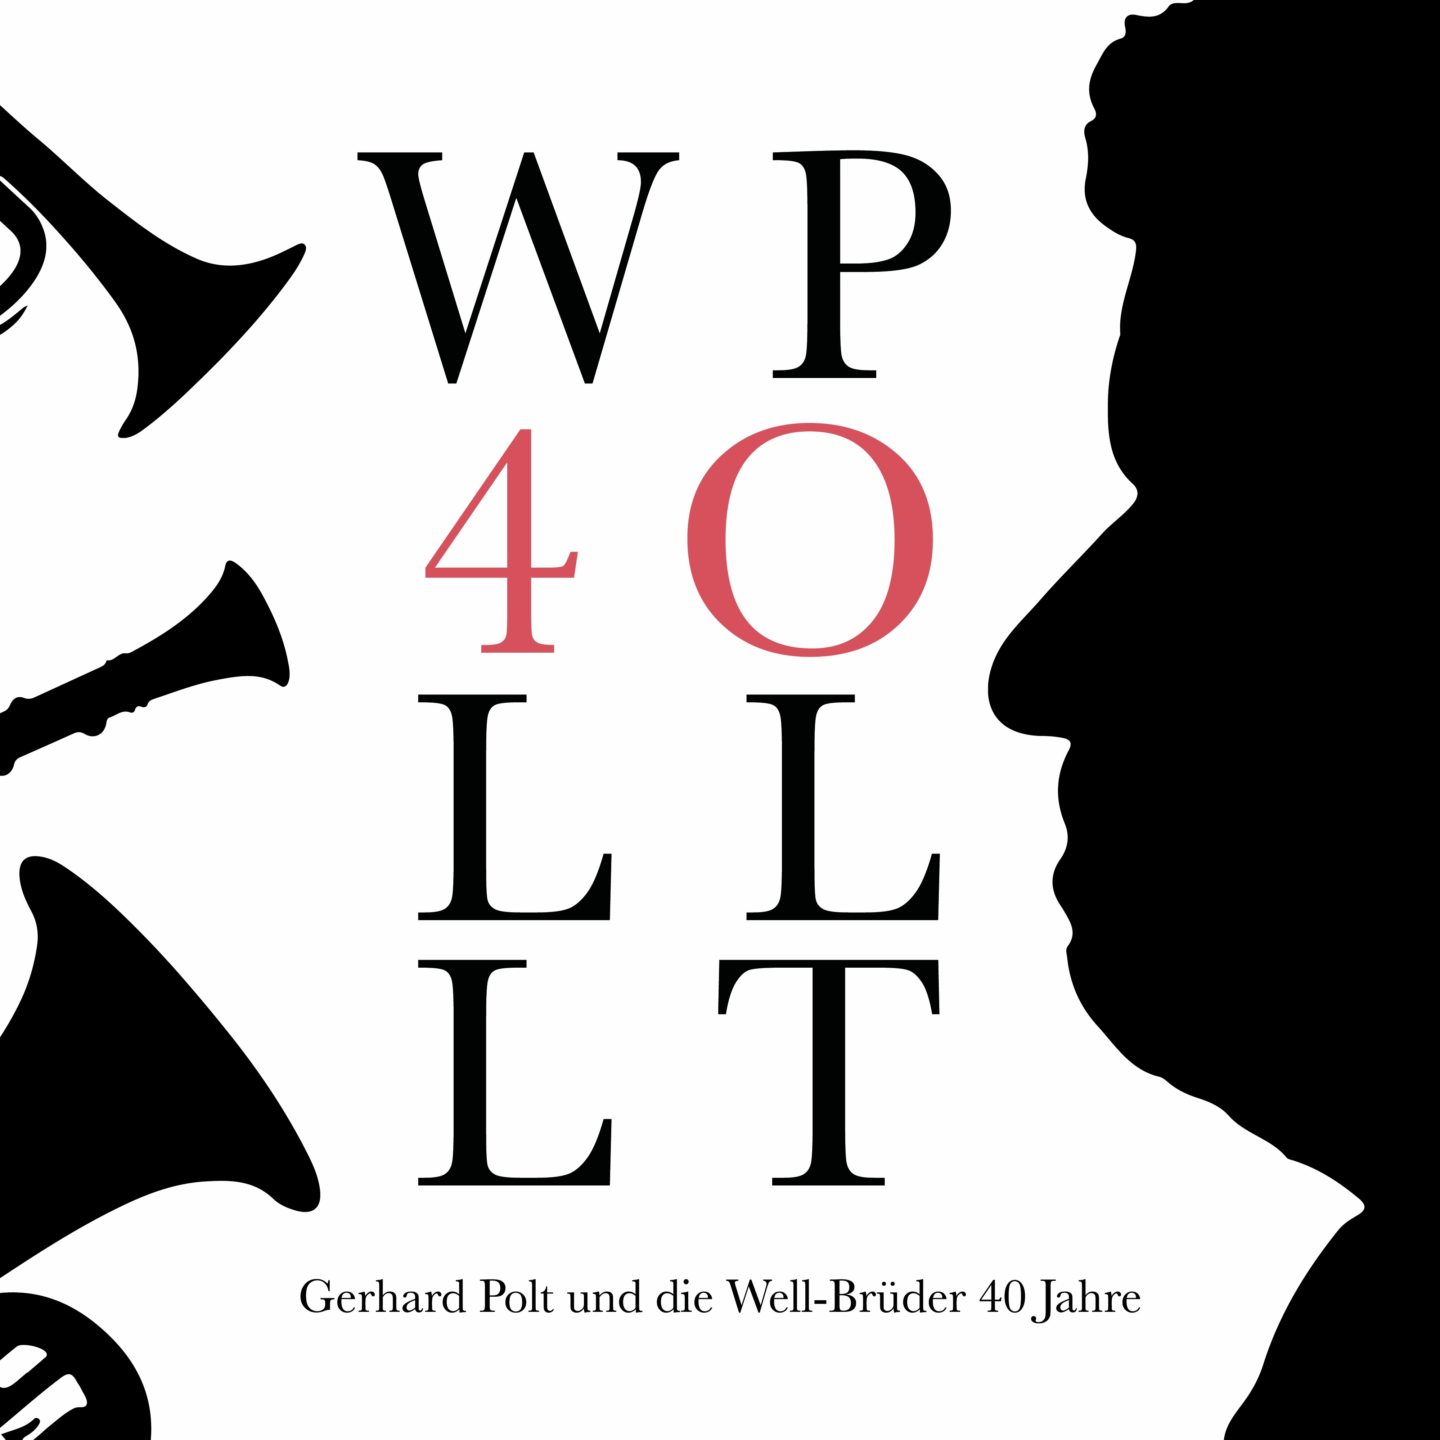 „Gerhard Polt und die Well-Brüder 40 Jahre“